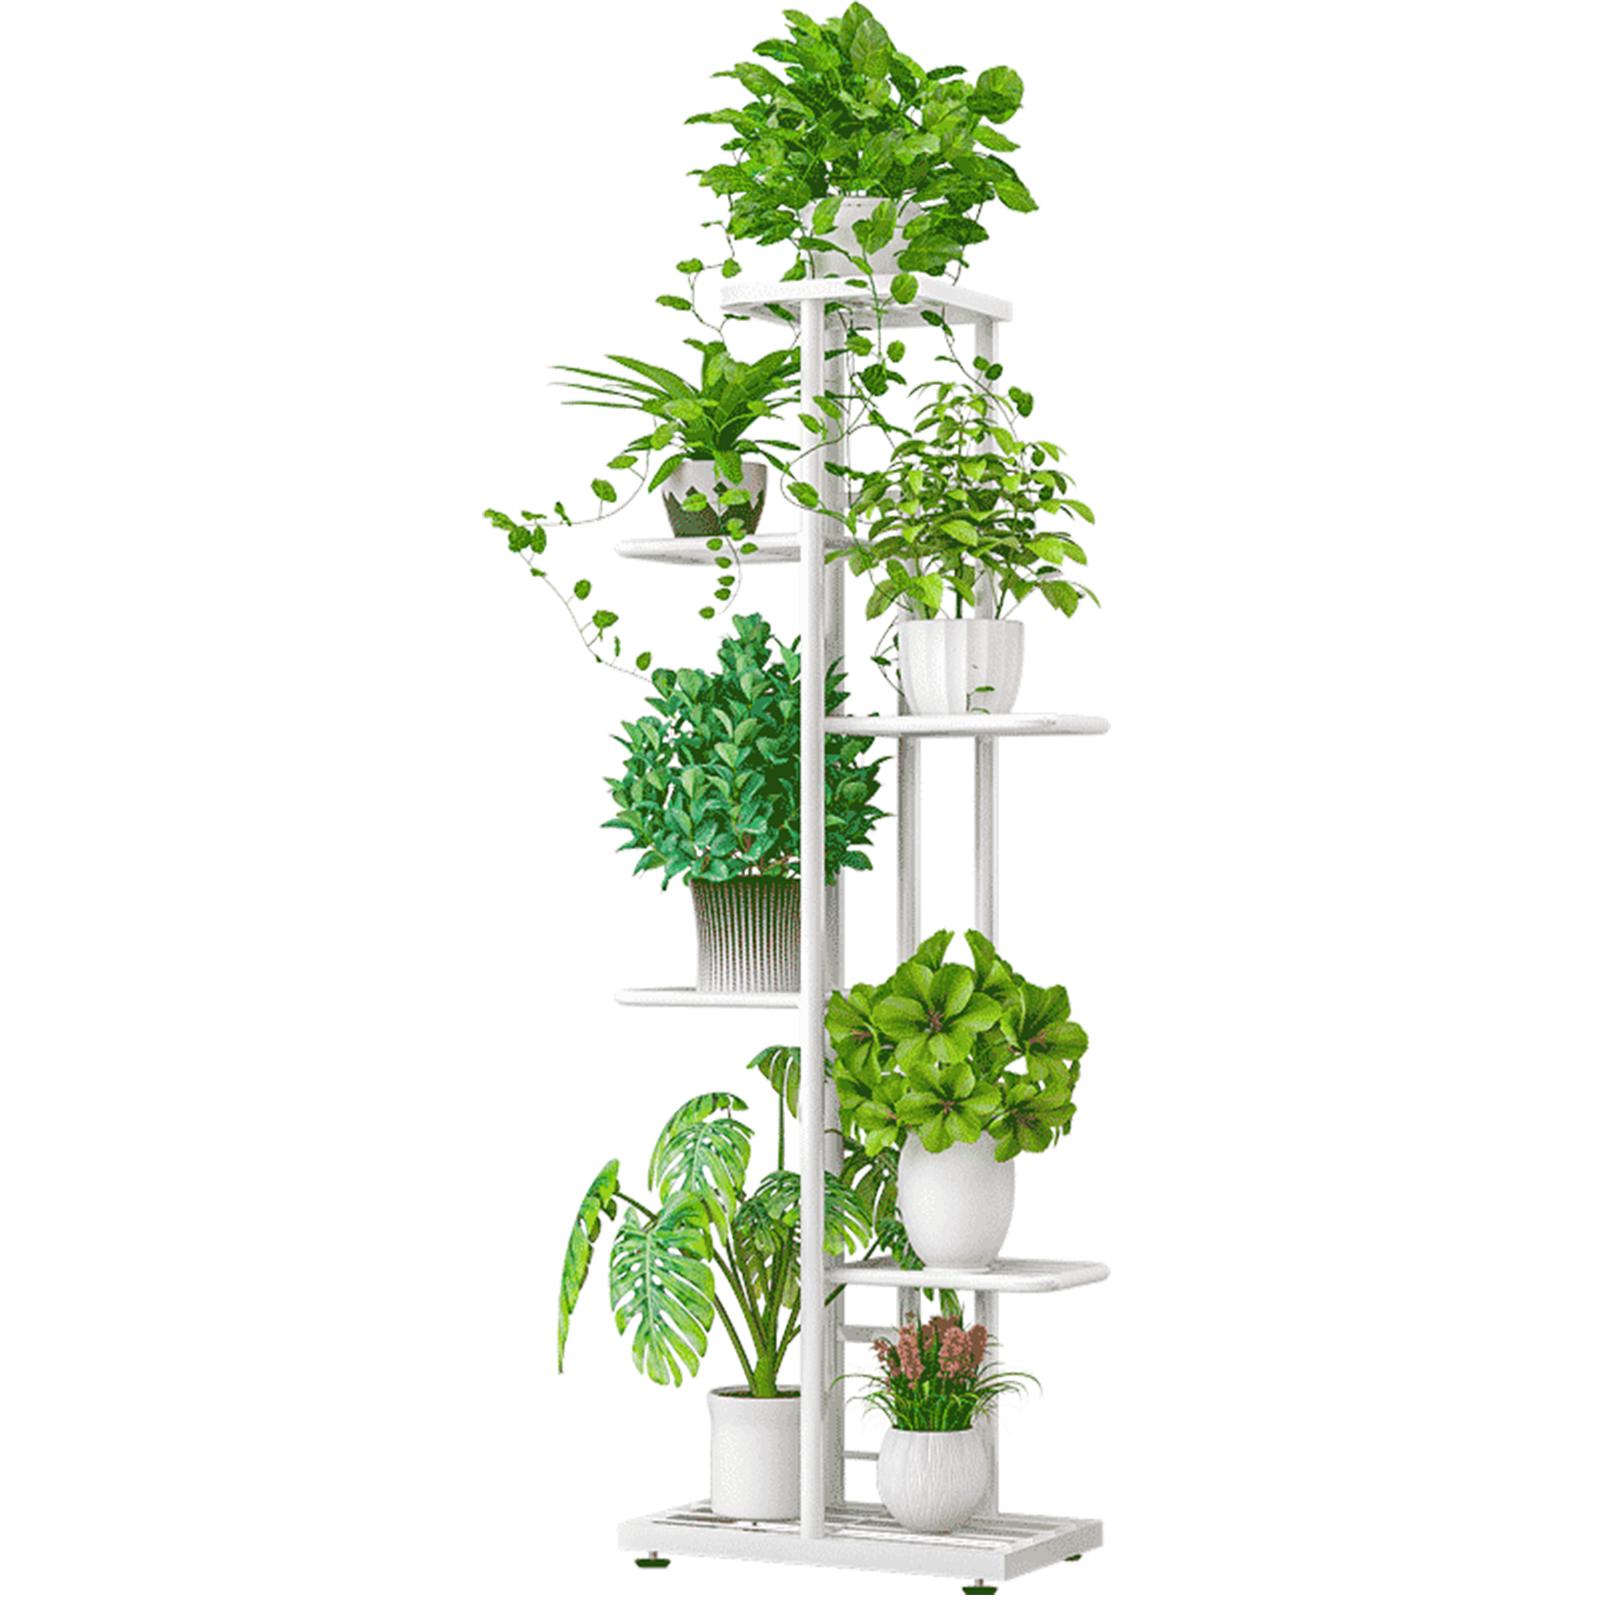 Giá đỡ trồng cây bằng kim loại 6 tầng, với lớp sơn chống gỉ, có khả năng chịu lực và độ bền cao